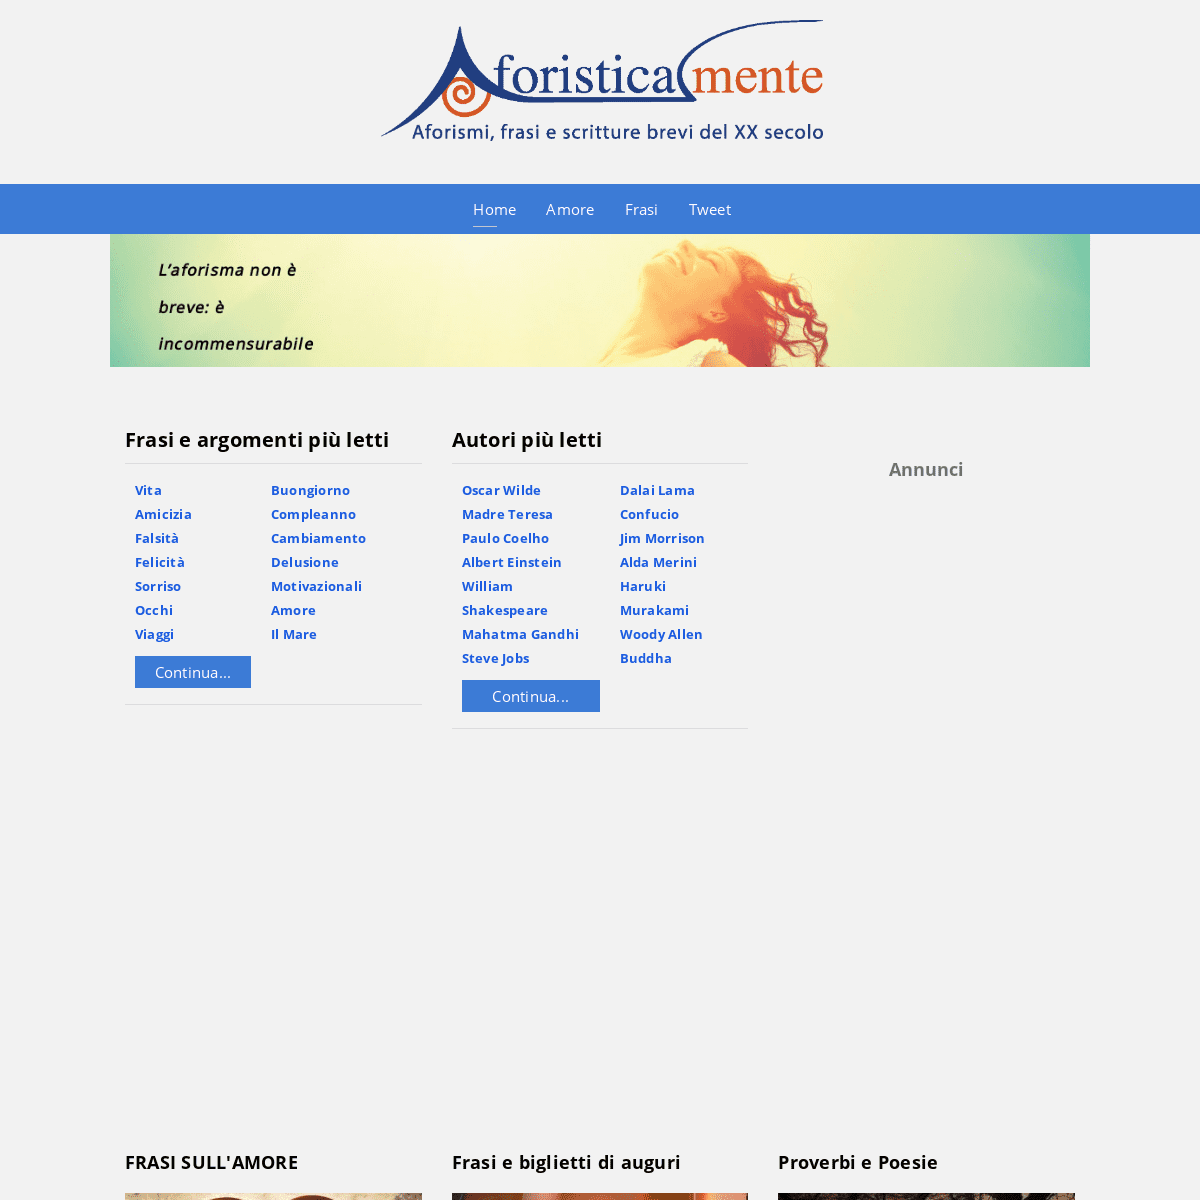 A complete backup of aforisticamente.com